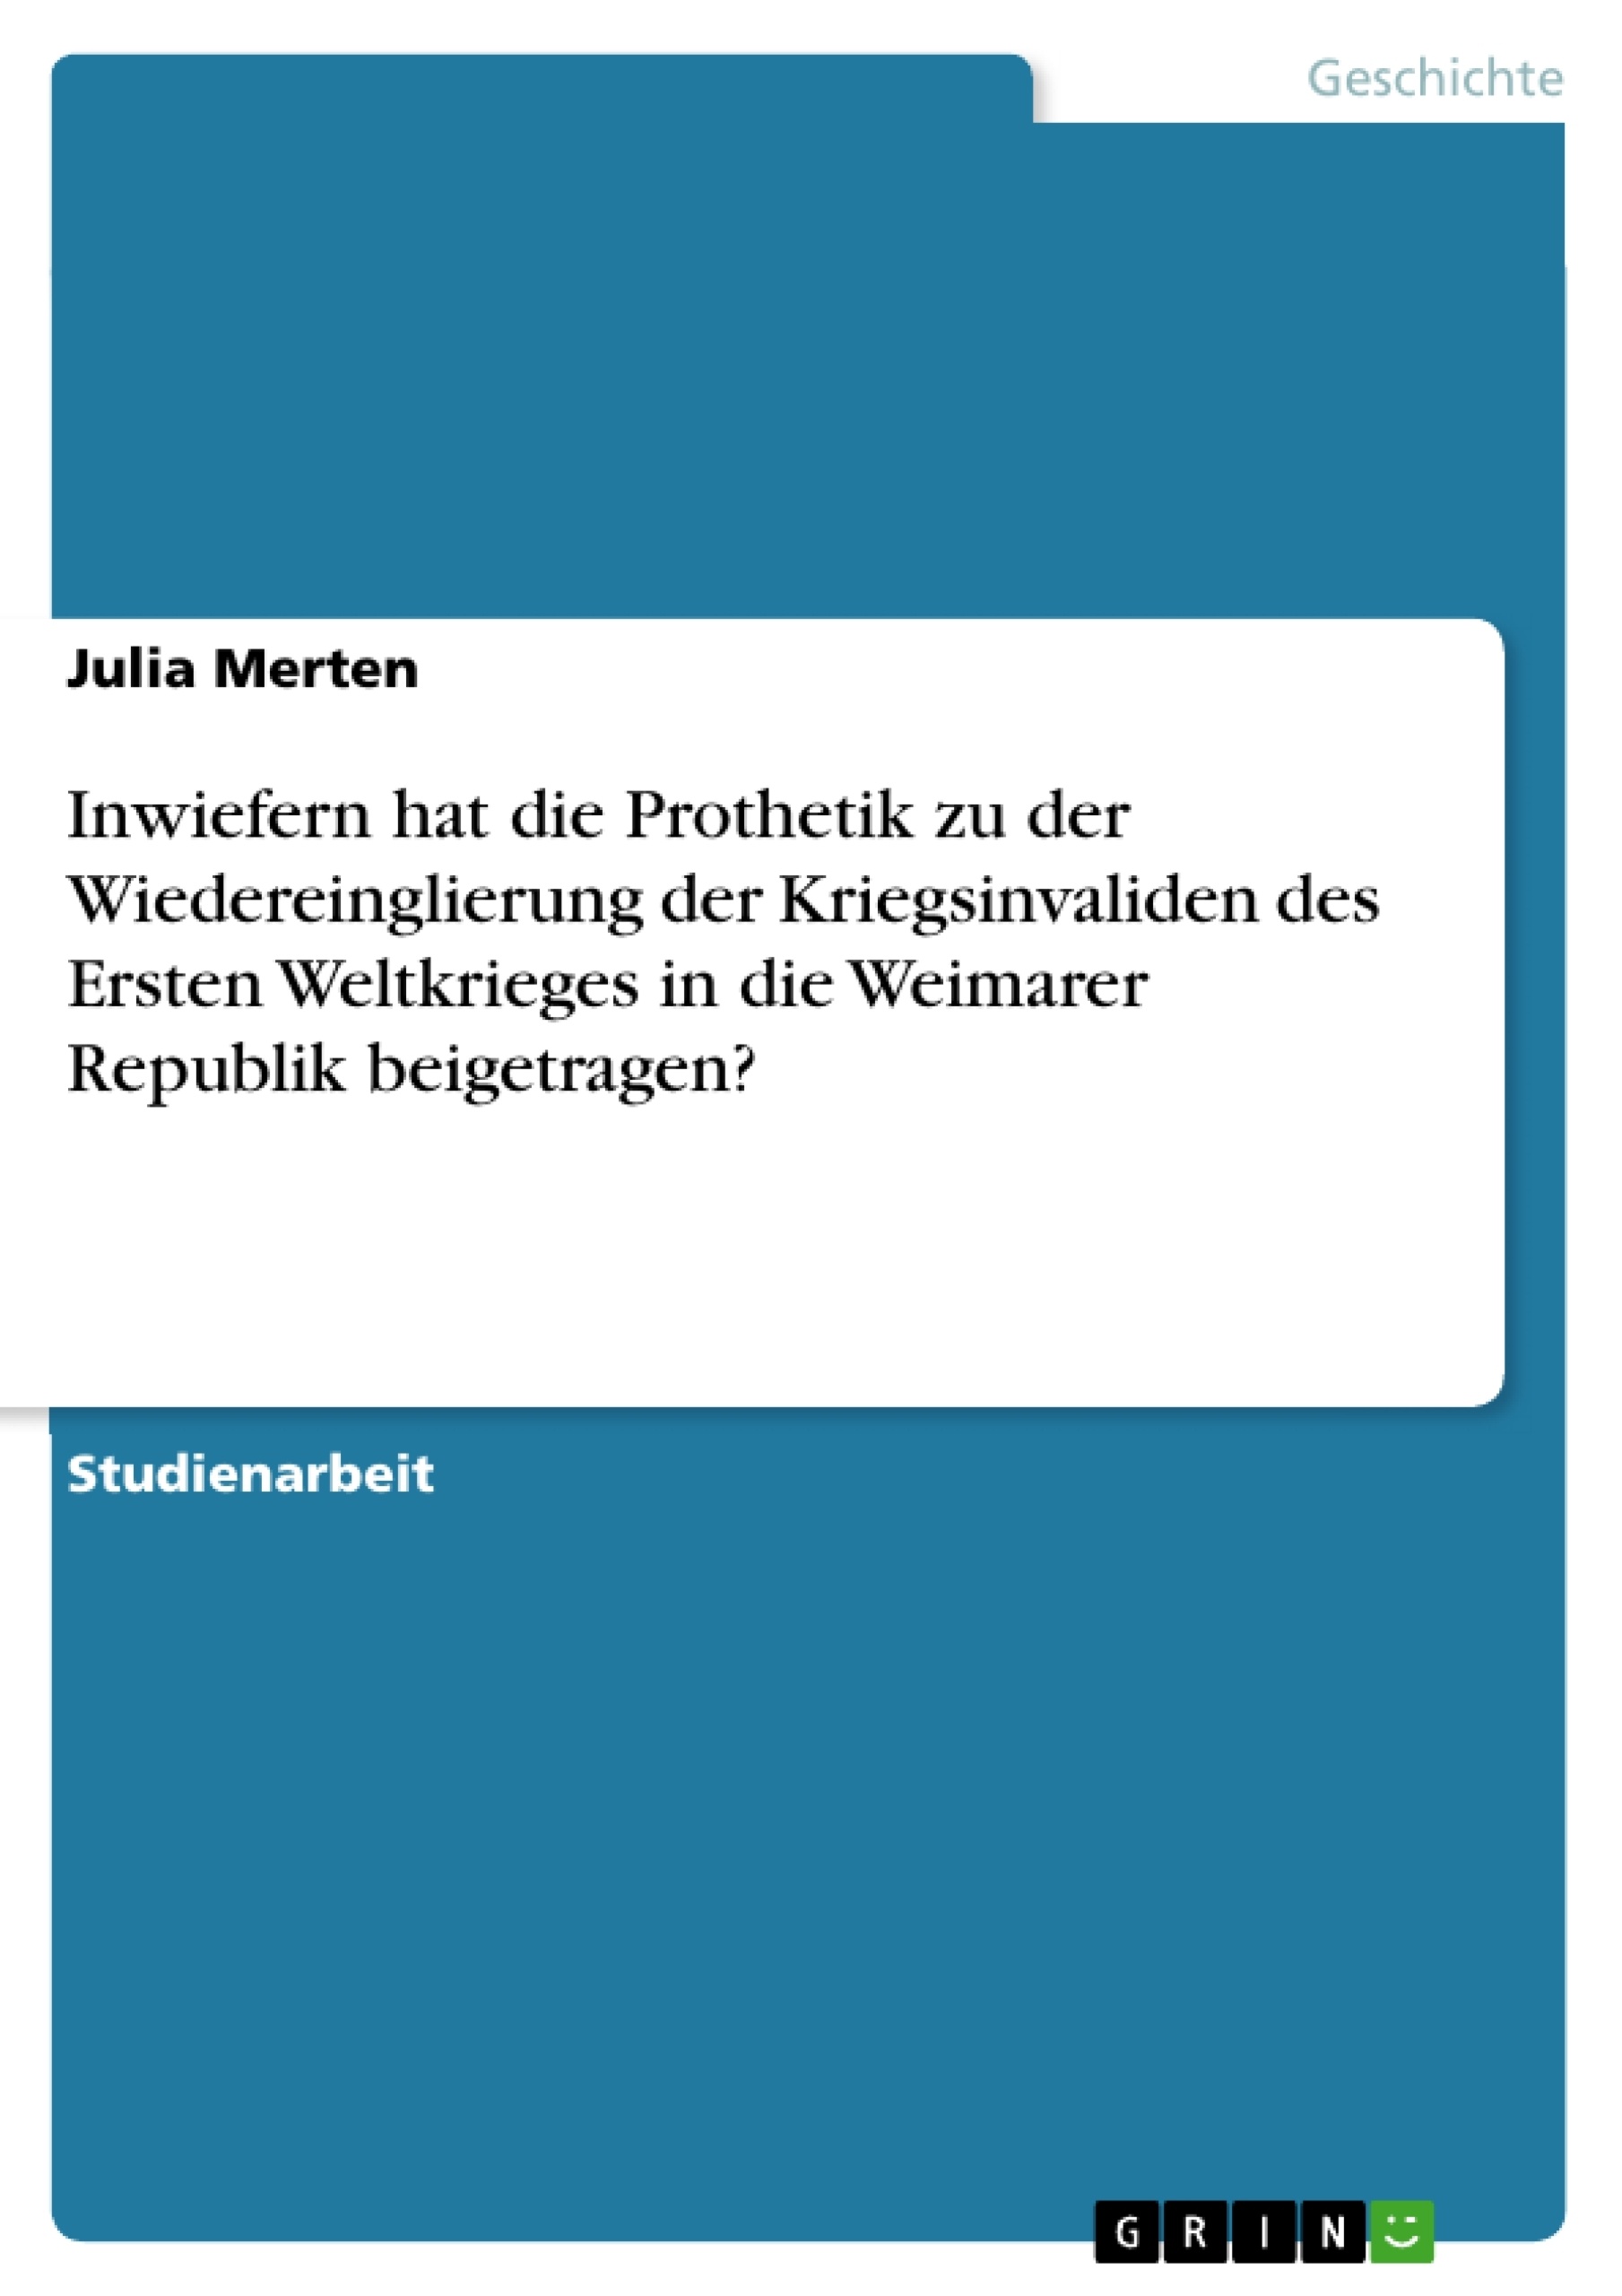 Title: Inwiefern hat die Prothetik zu der Wiedereinglierung der Kriegsinvaliden des Ersten Weltkrieges in die Weimarer Republik beigetragen?